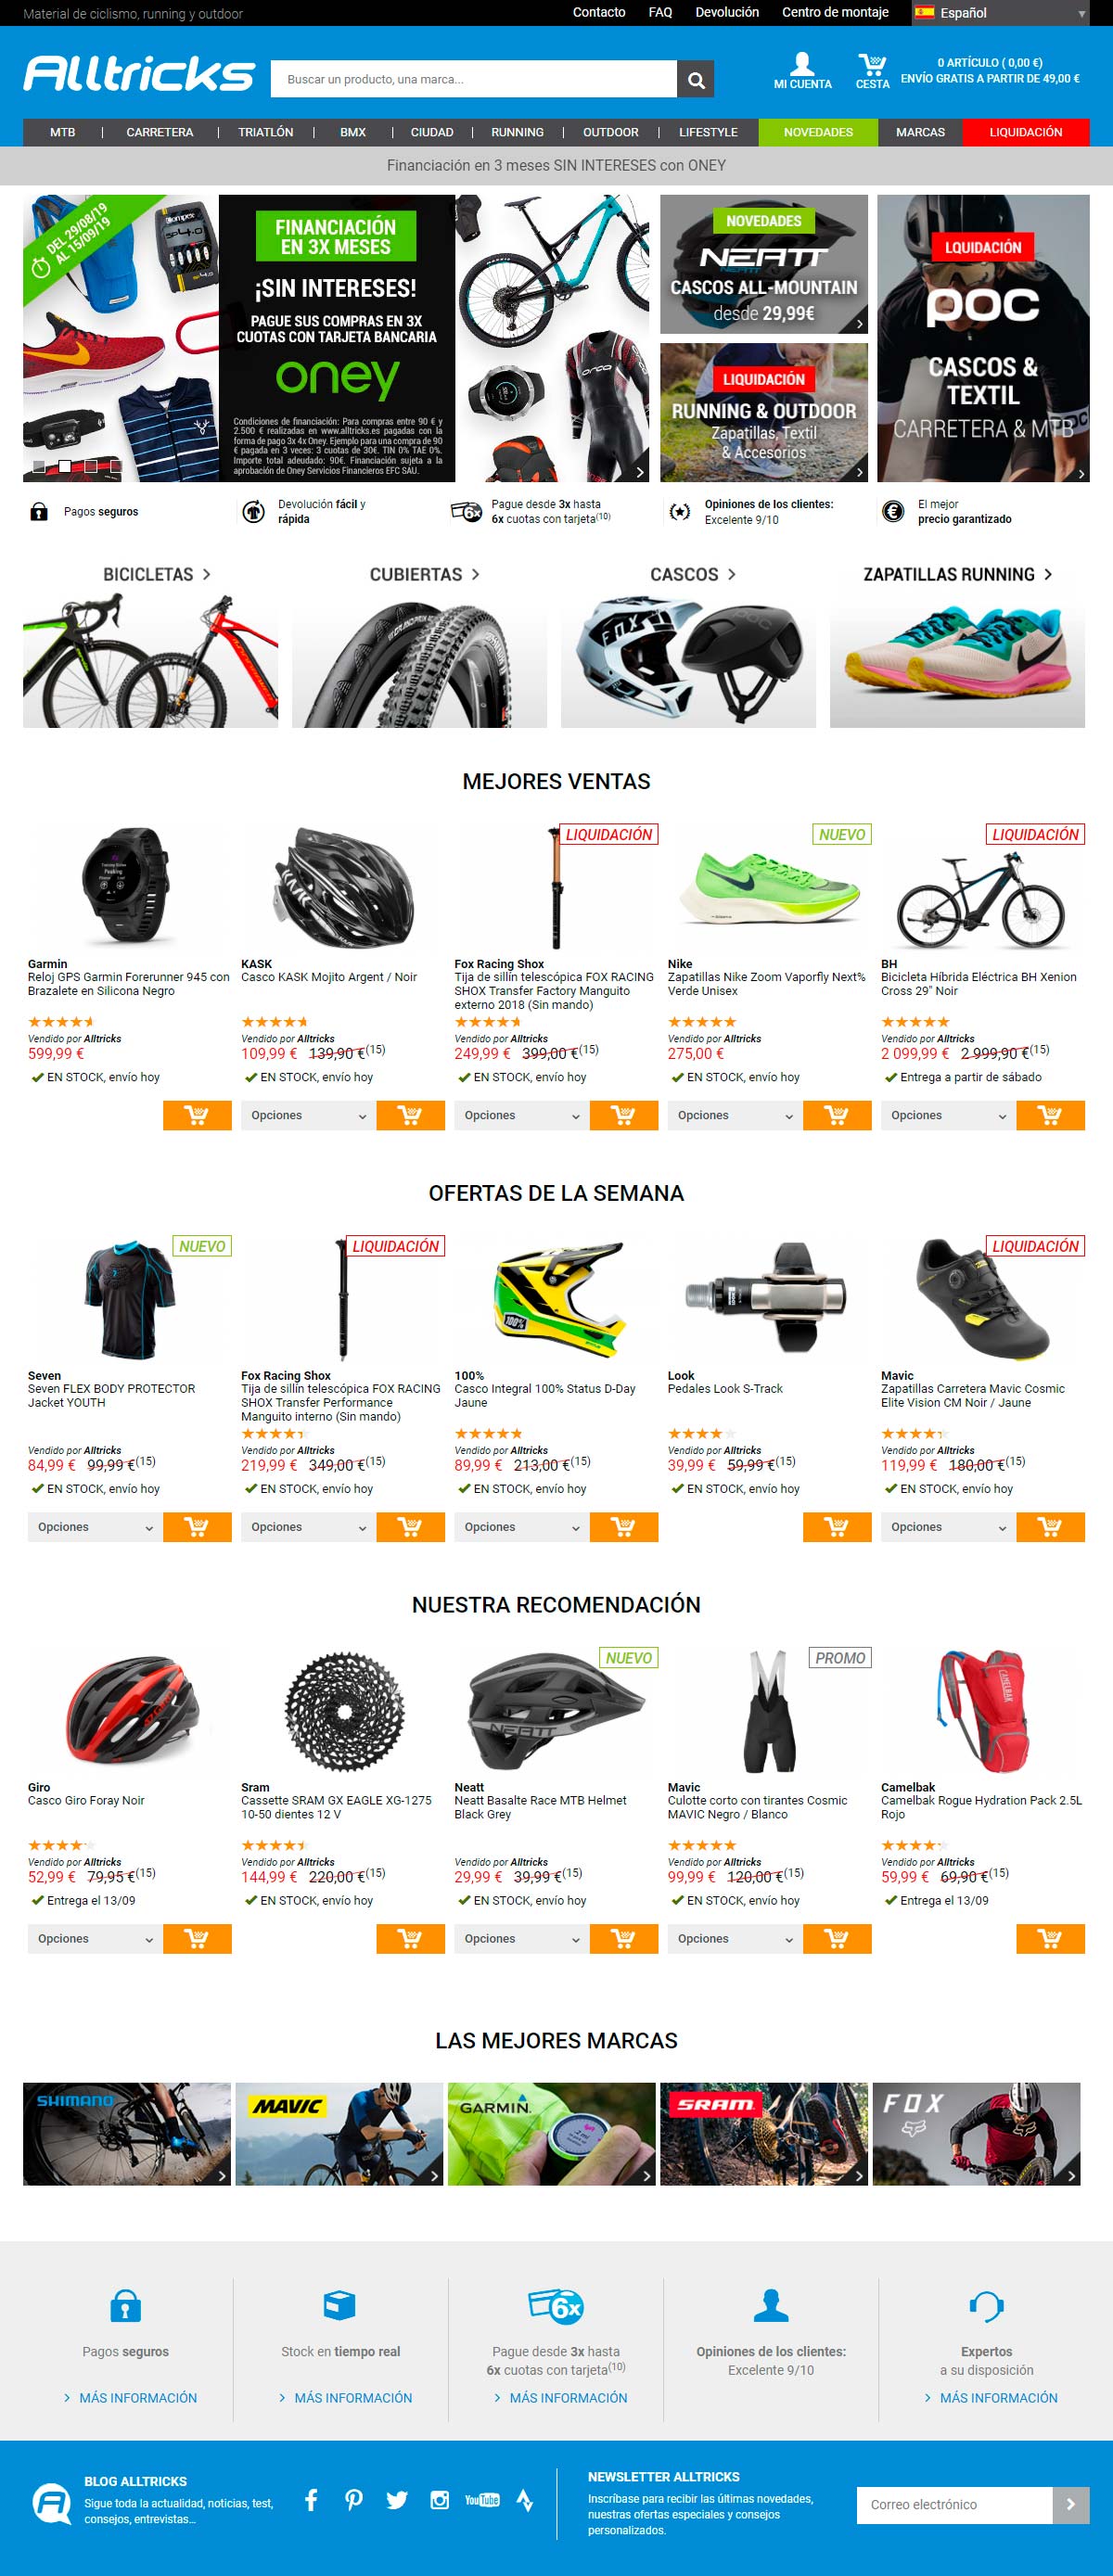 Decathlon compra Alltricks, uno de los principales comercios online de ciclismo en Europa